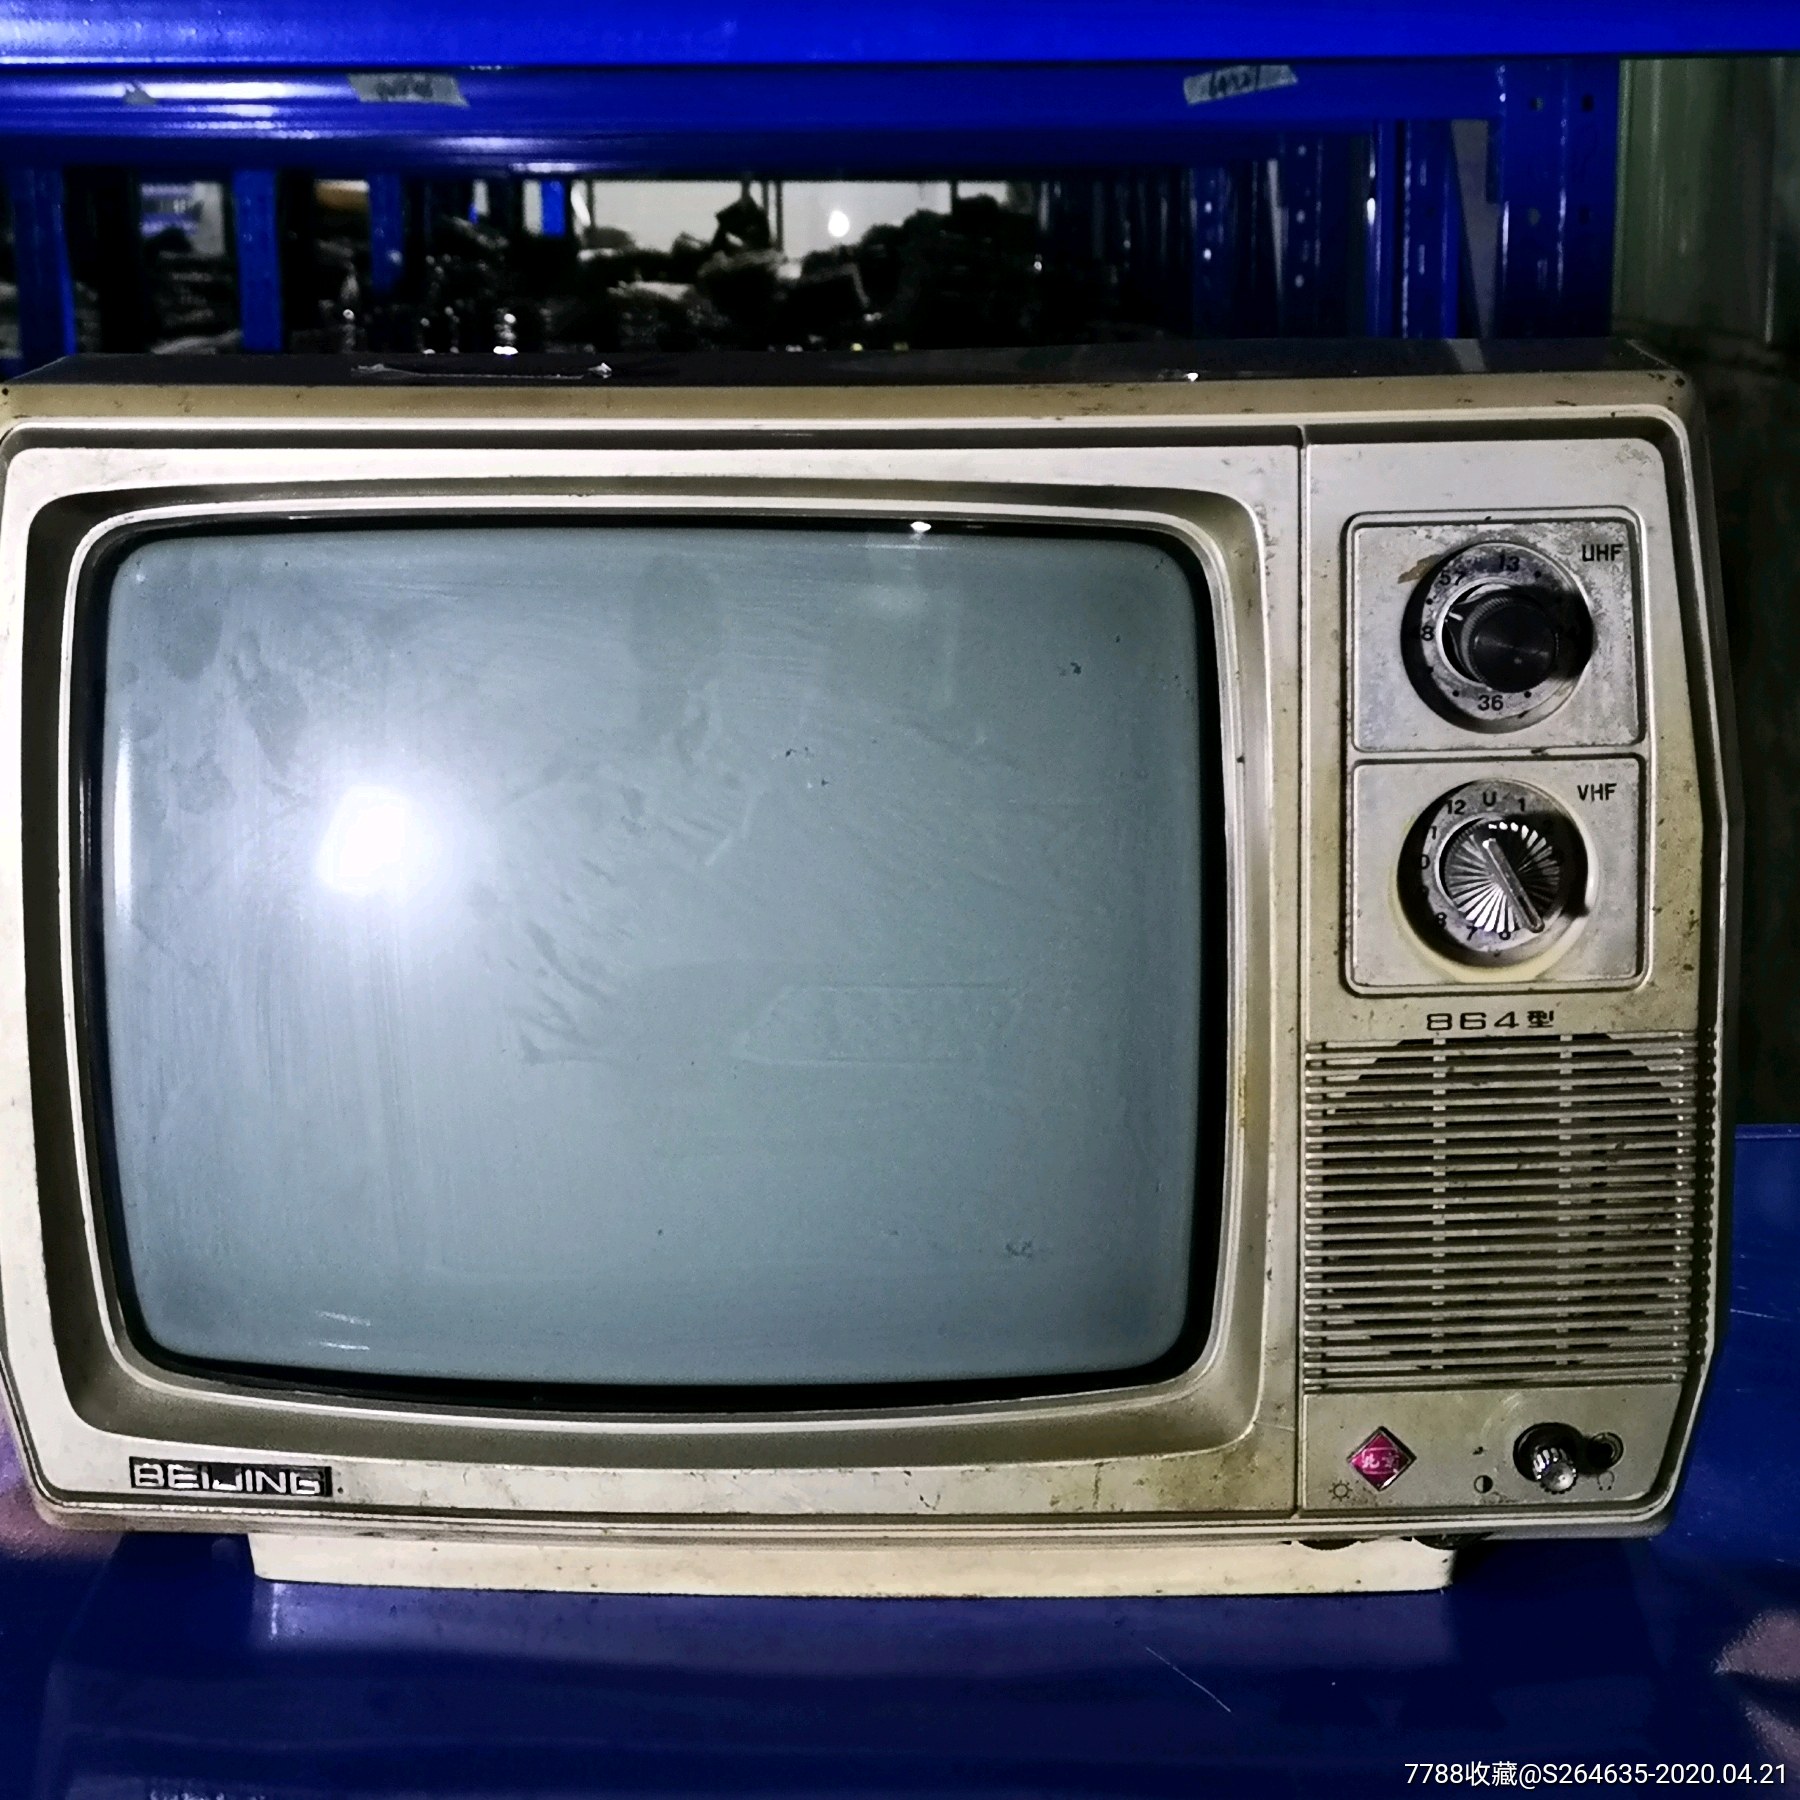 老式电视机投放图片